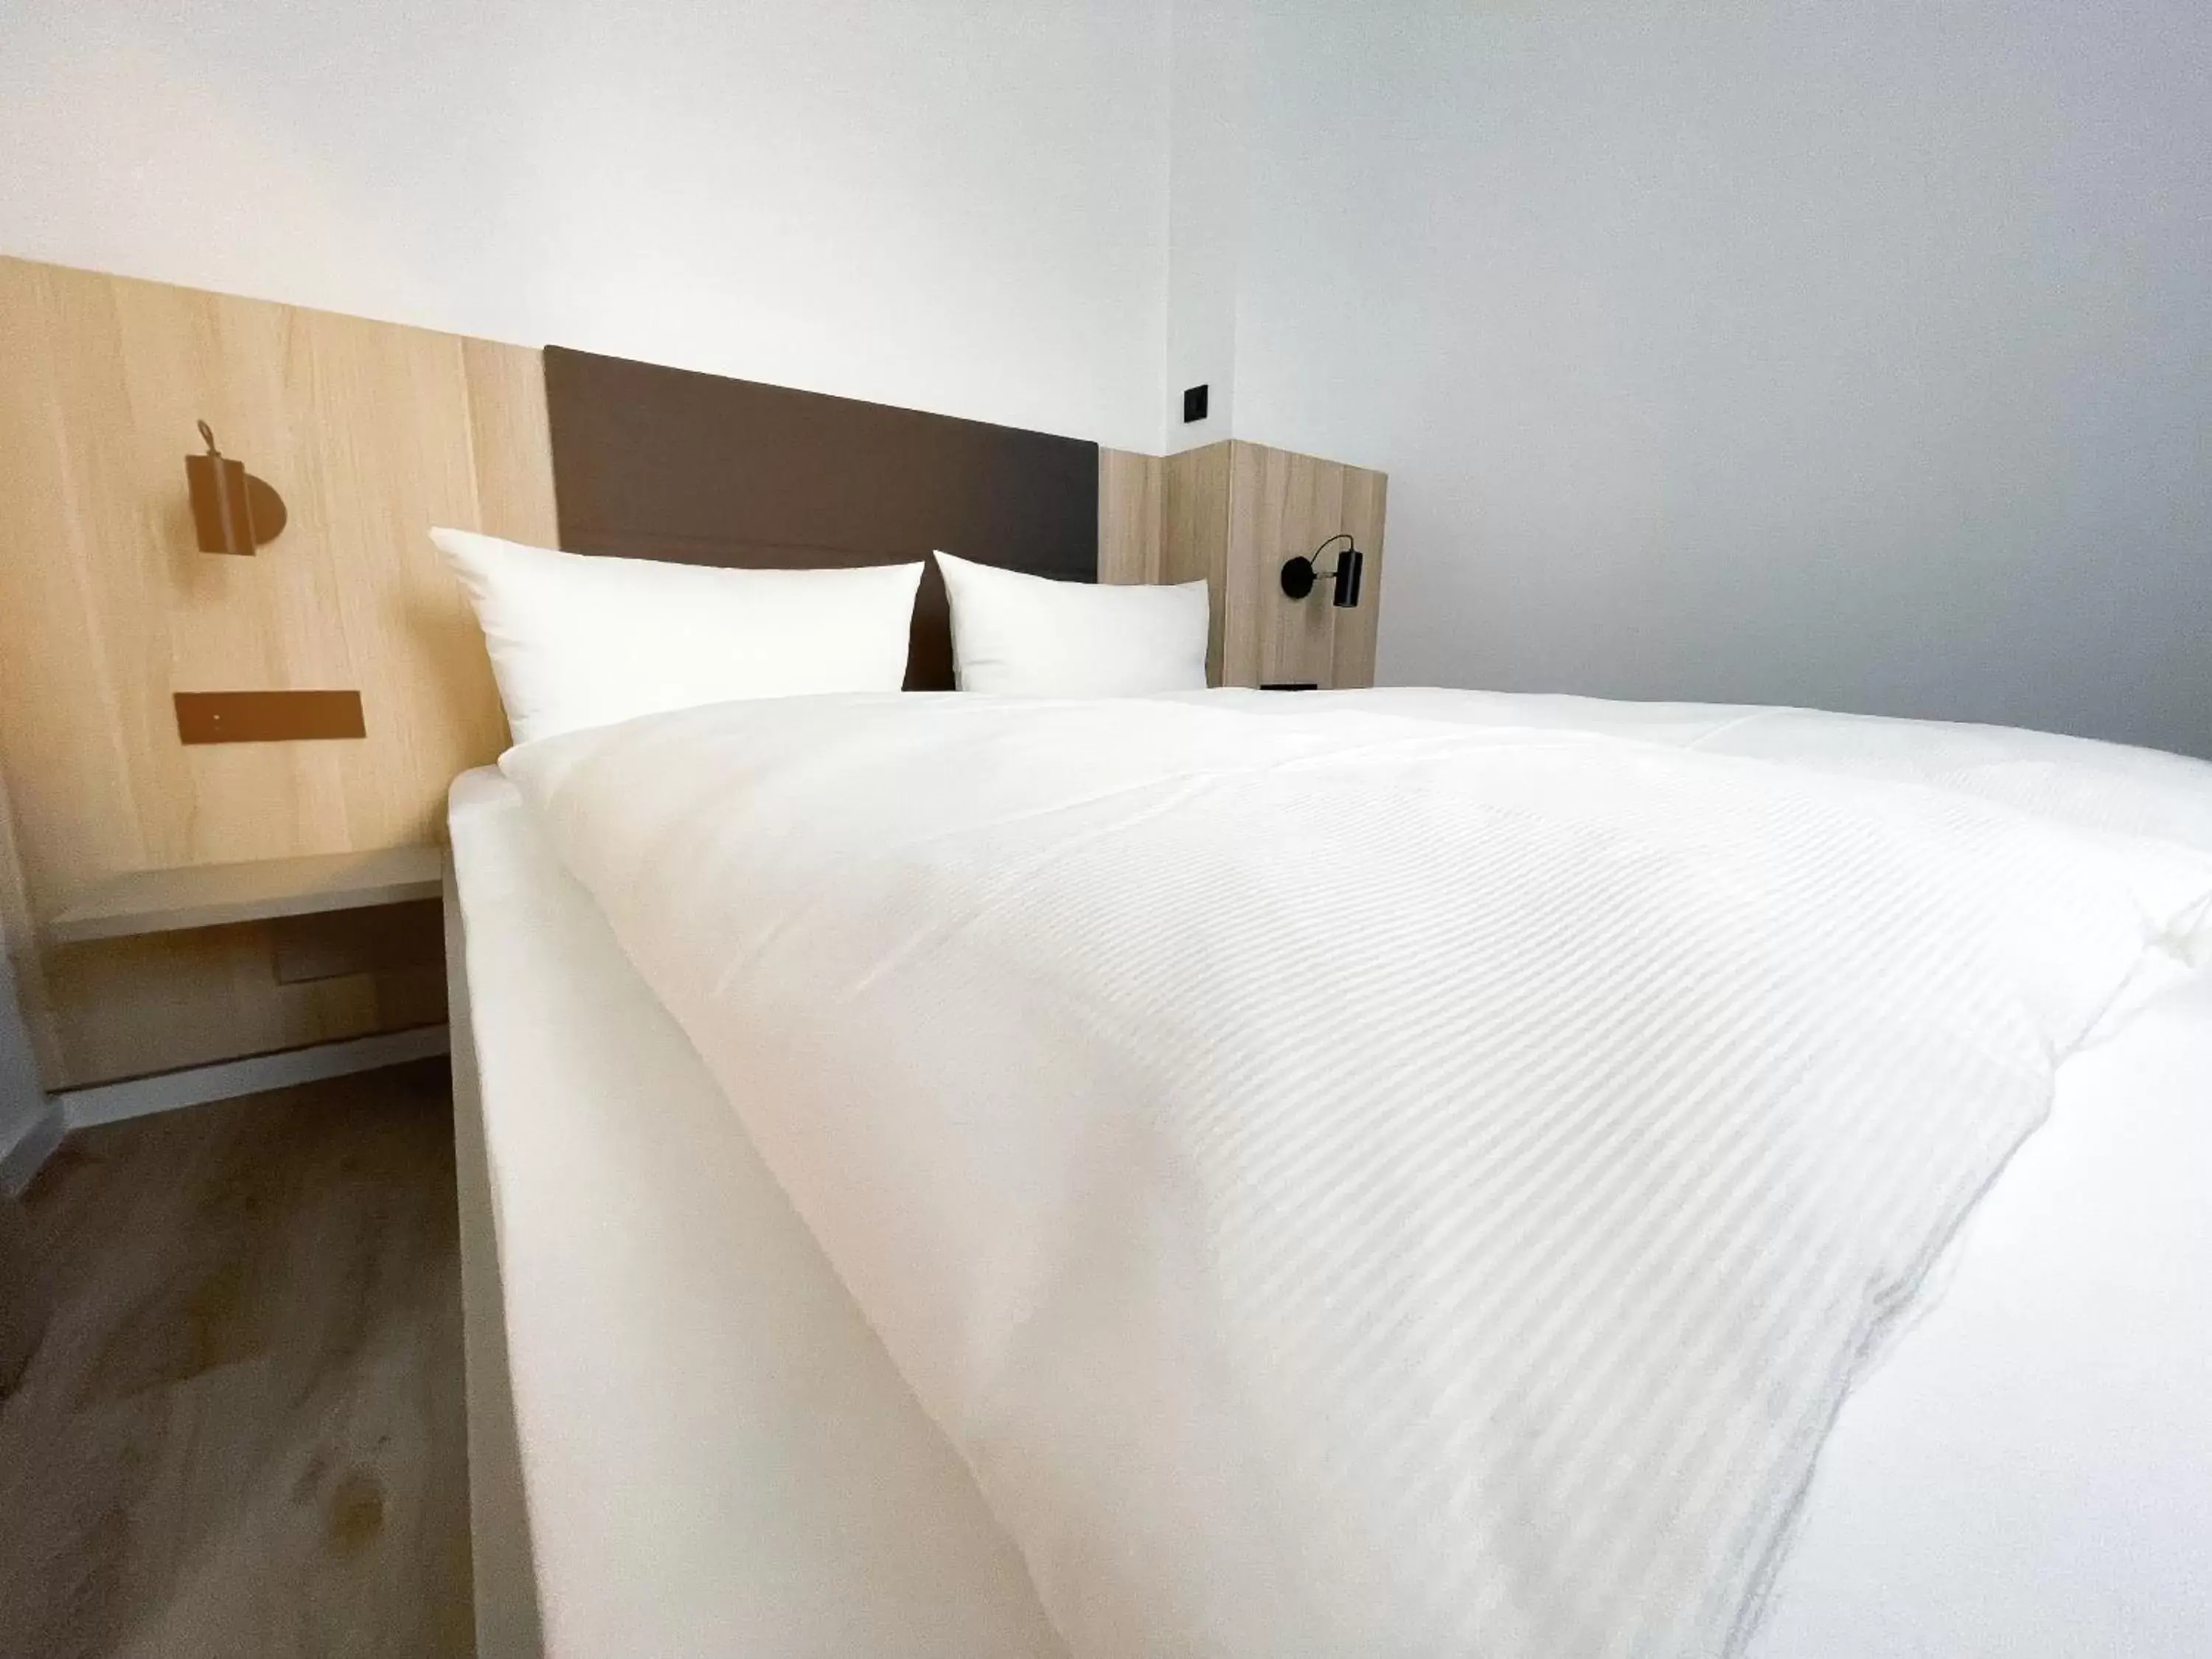 Bed in HOLI-Berlin Hotel